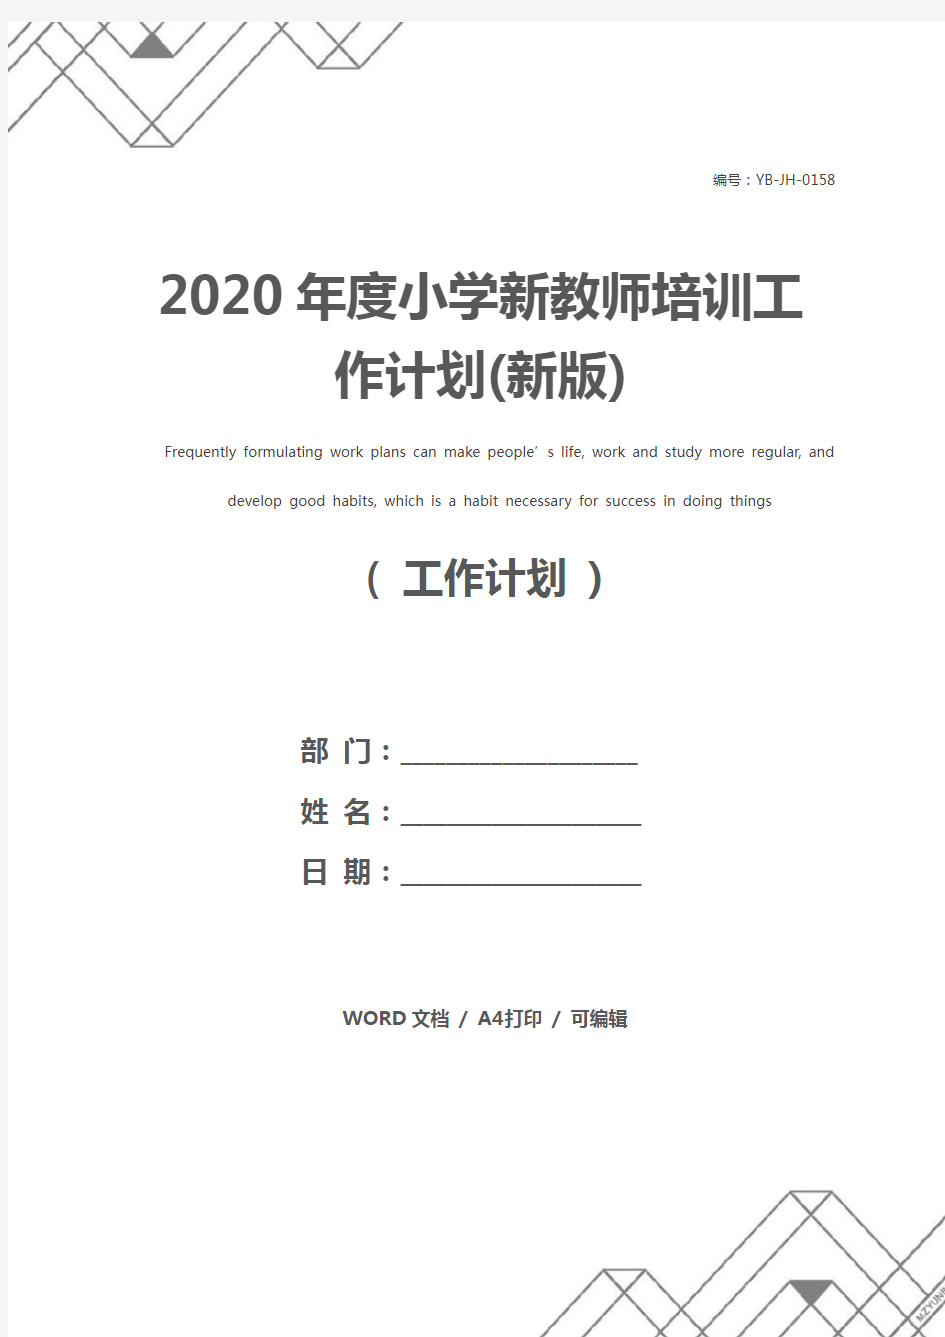 2020年度小学新教师培训工作计划(新版)